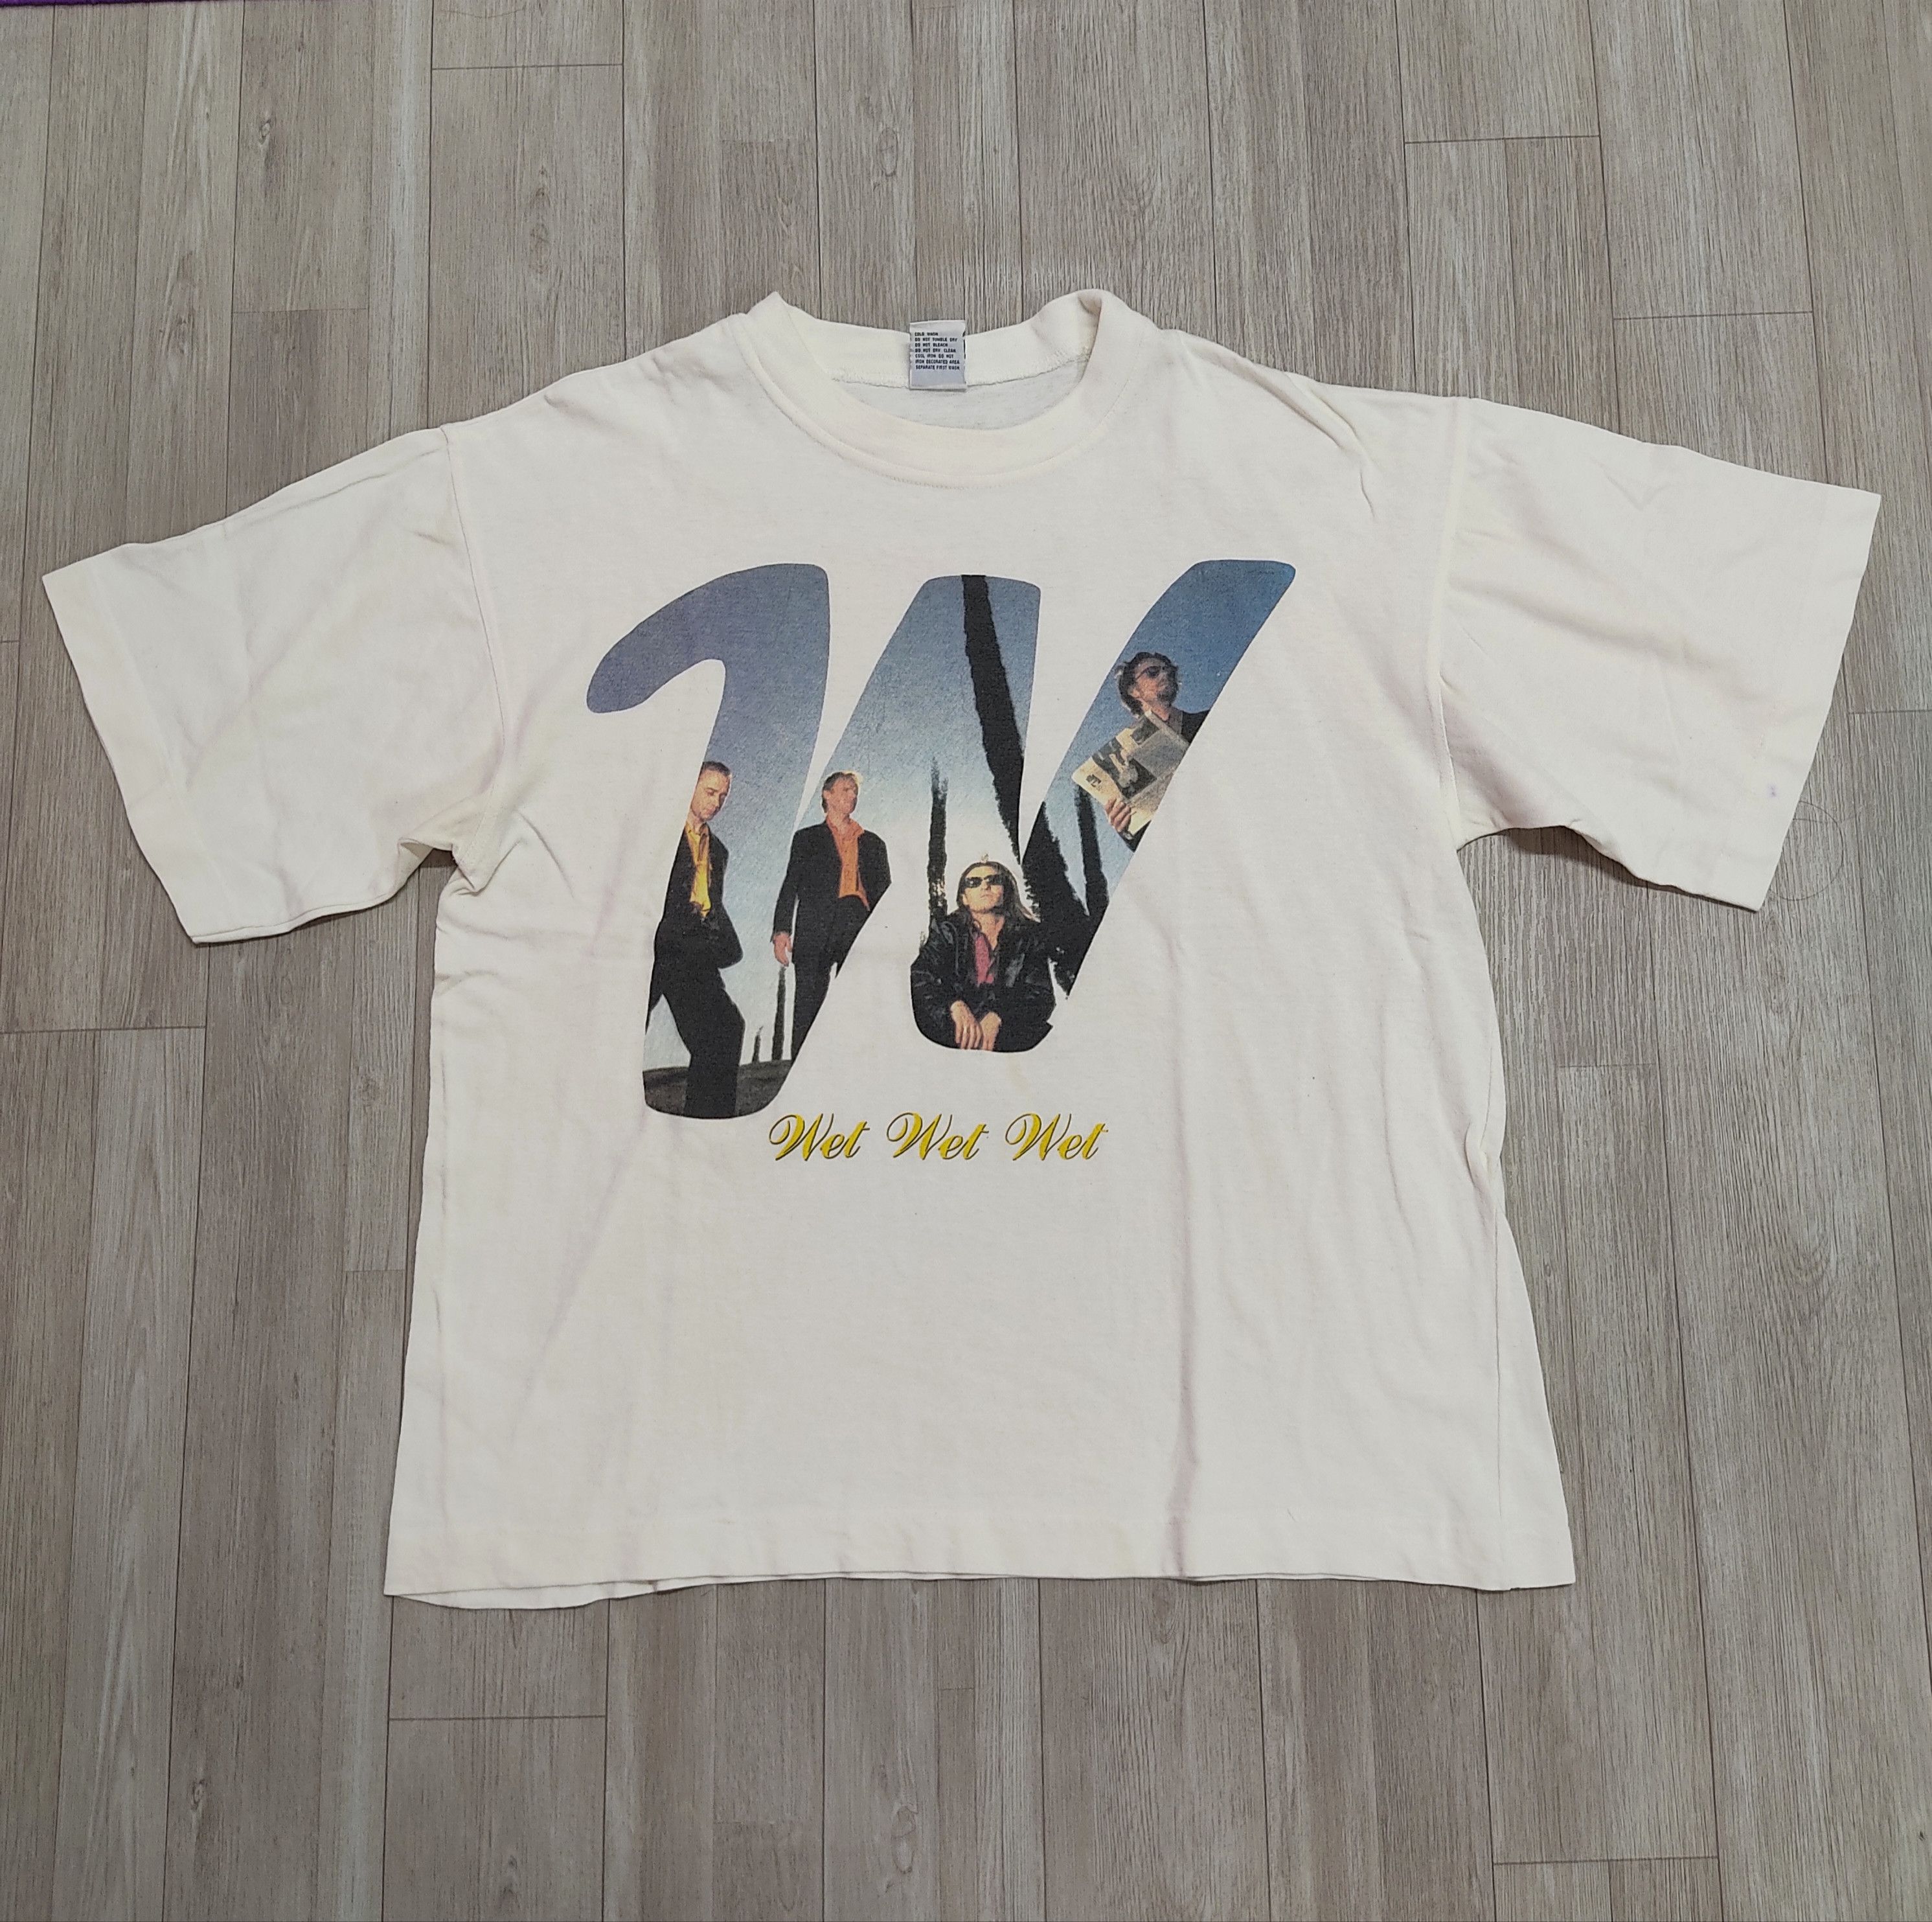 Vintage 90s WET WET WET Band Tour T-shirt - 3